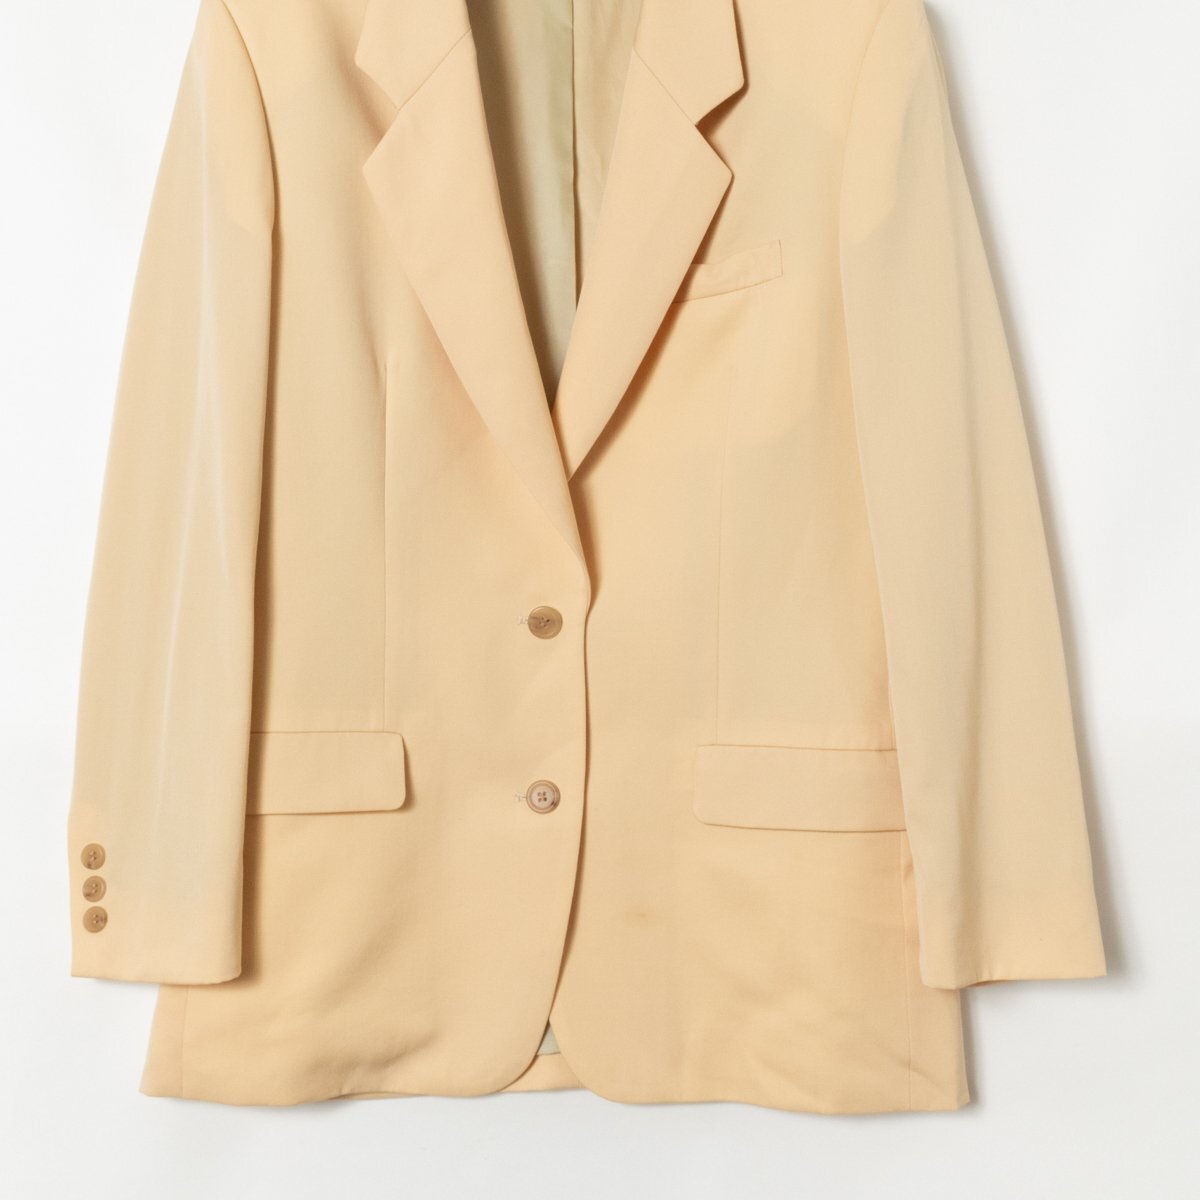 Brooks Brothers ブルックス ブラザーズ 日本製 シングルジャケット 上着 無地 肩パッド入り 11AR ウール100% ベージュ 綺麗め フォーマル_画像4